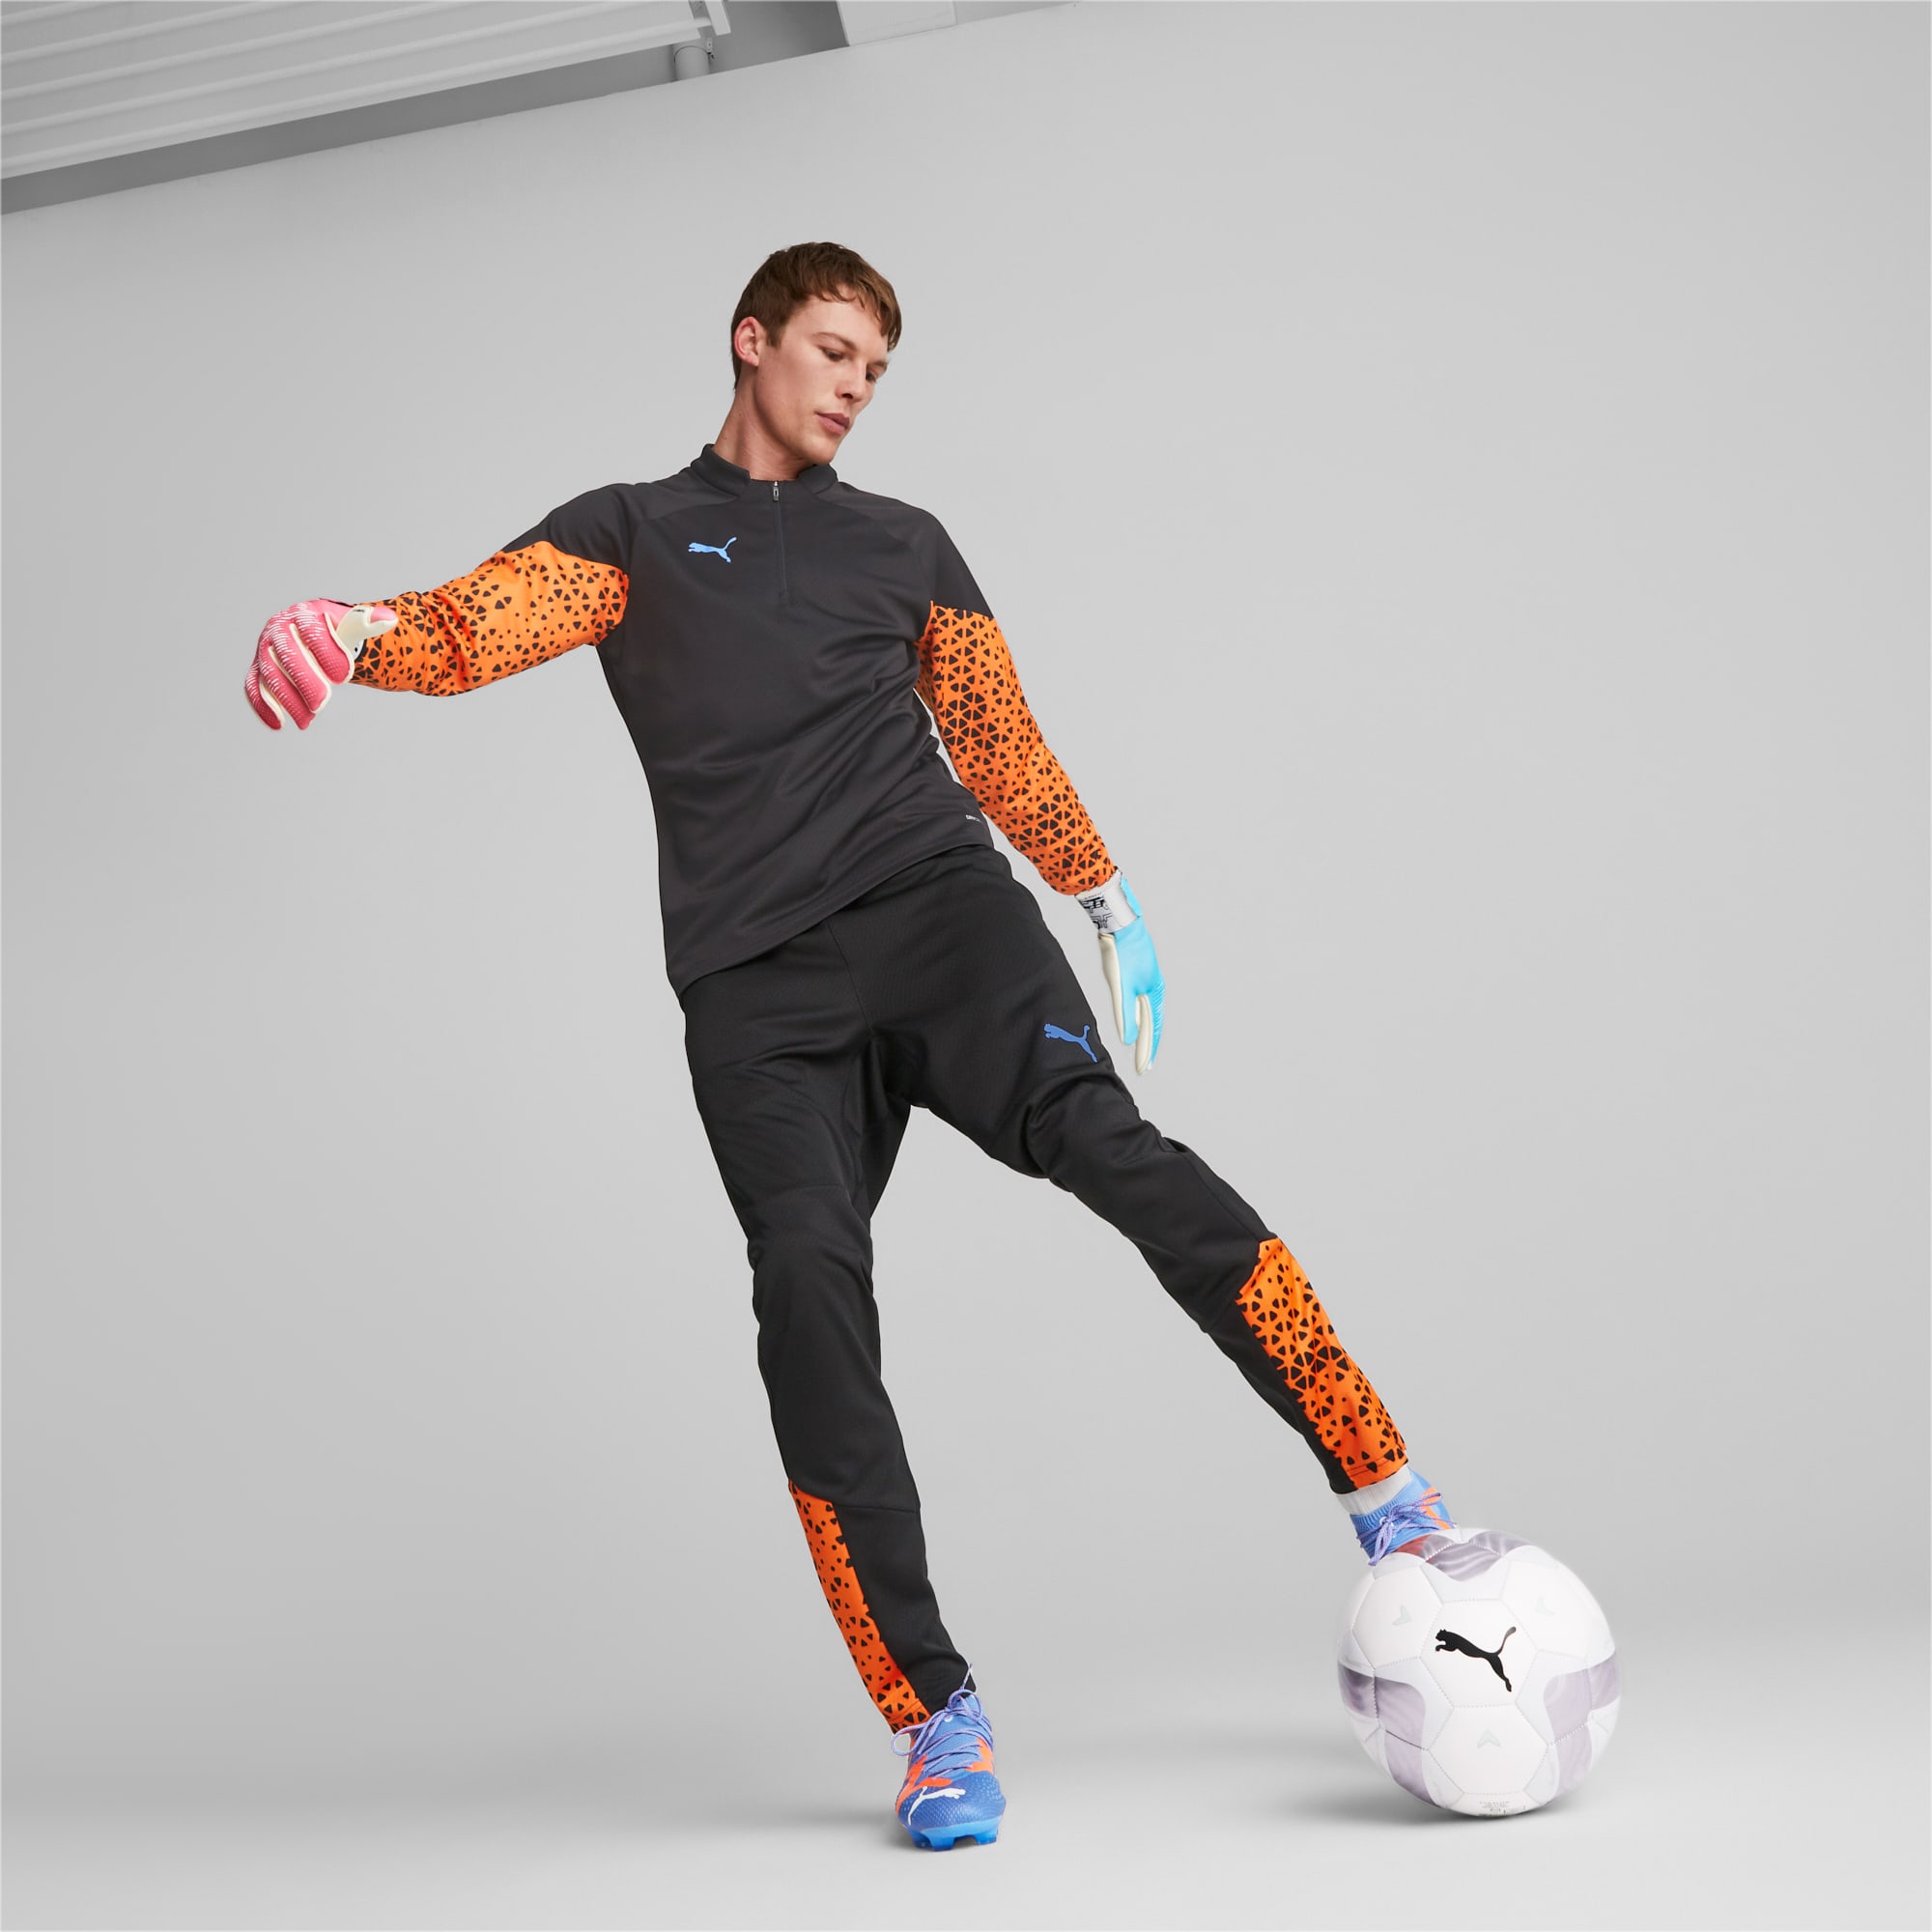 PUMA ULTRA Grip 1 Tricks Hybrid voetbal keepershandschoenen voor Heren, Blauw/Roze